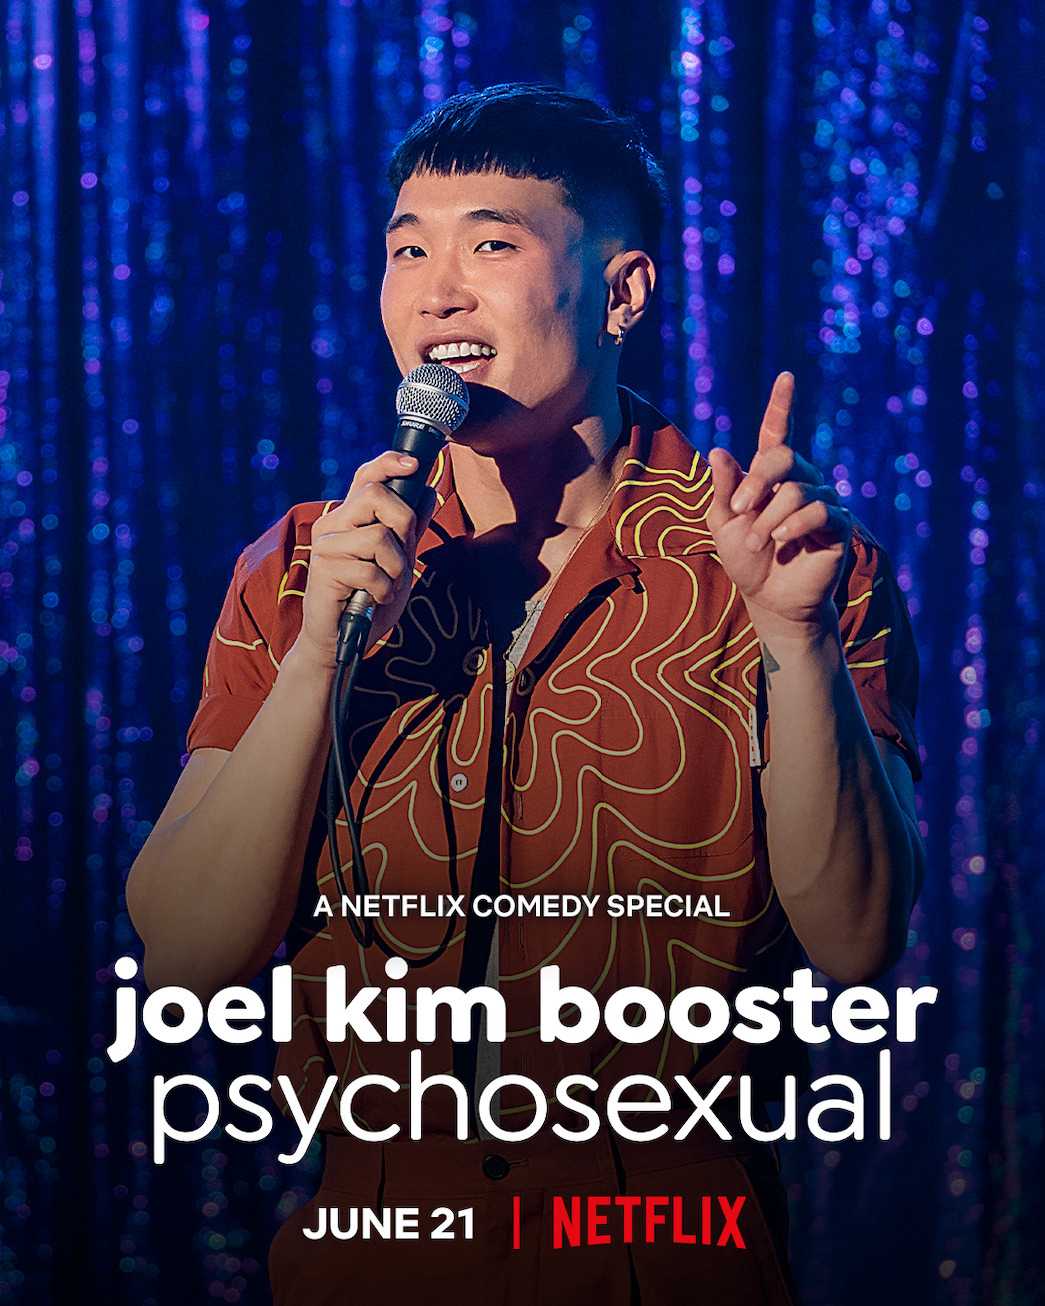 Joel kim booster: tâm tính dục - Joel kim booster: psychosexual